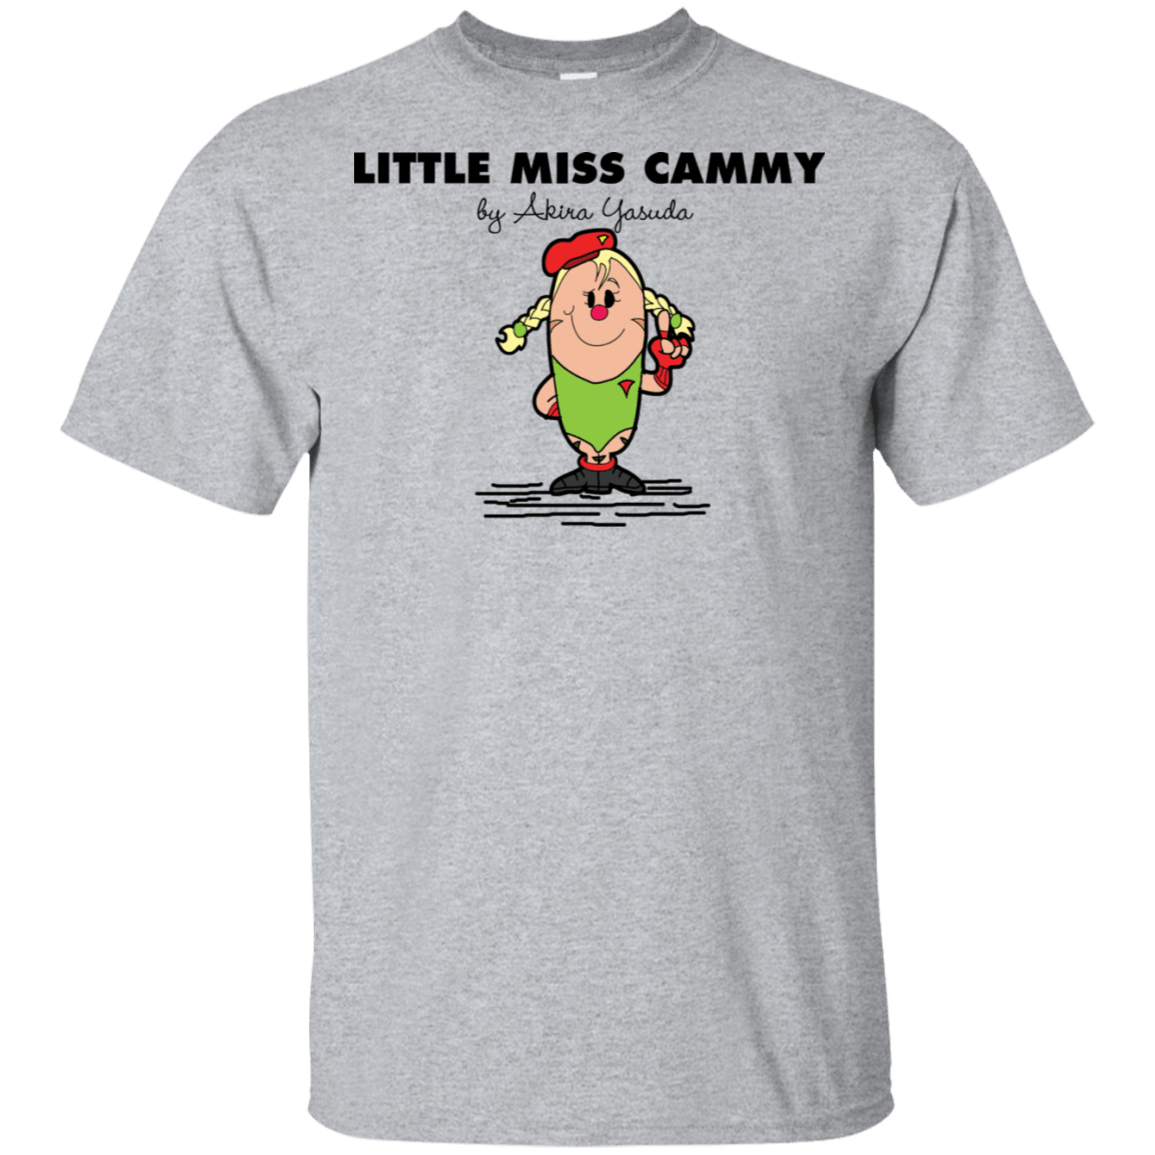 T-Shirts Sport Grey / S Little Miss Cammy T-Shirt